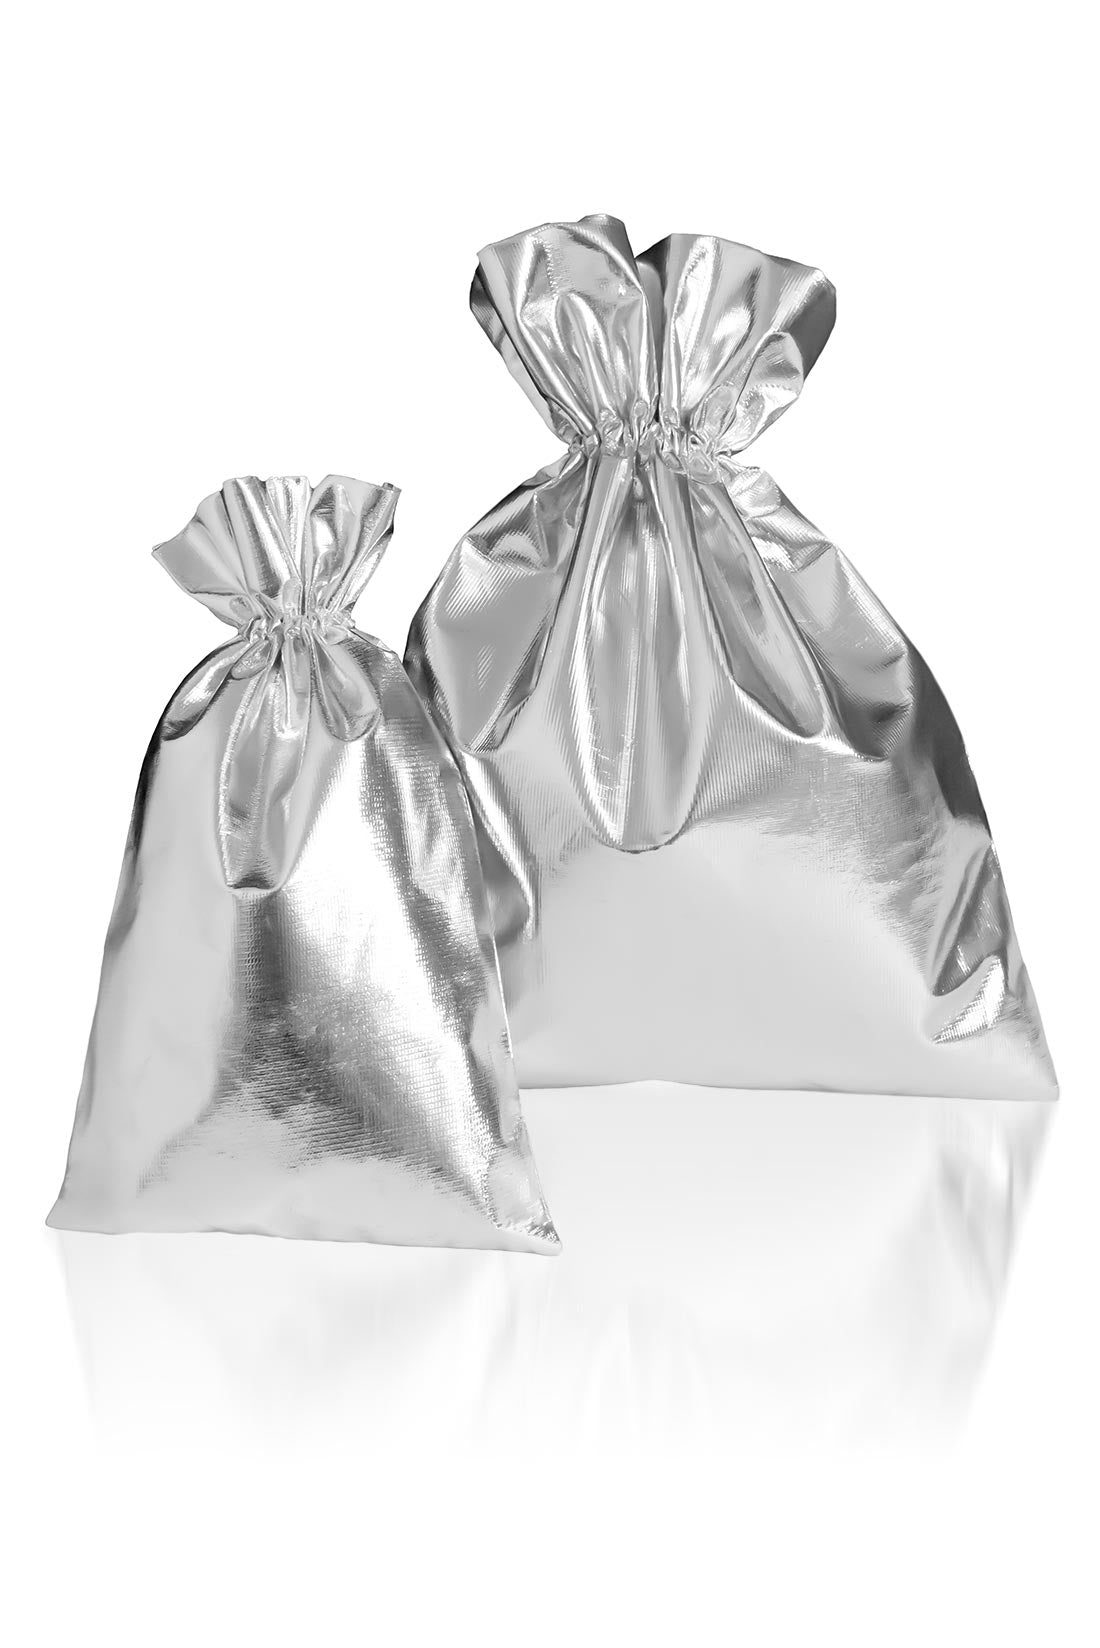 Shiny silver bag for gymnastics gifts, Destira, 2023